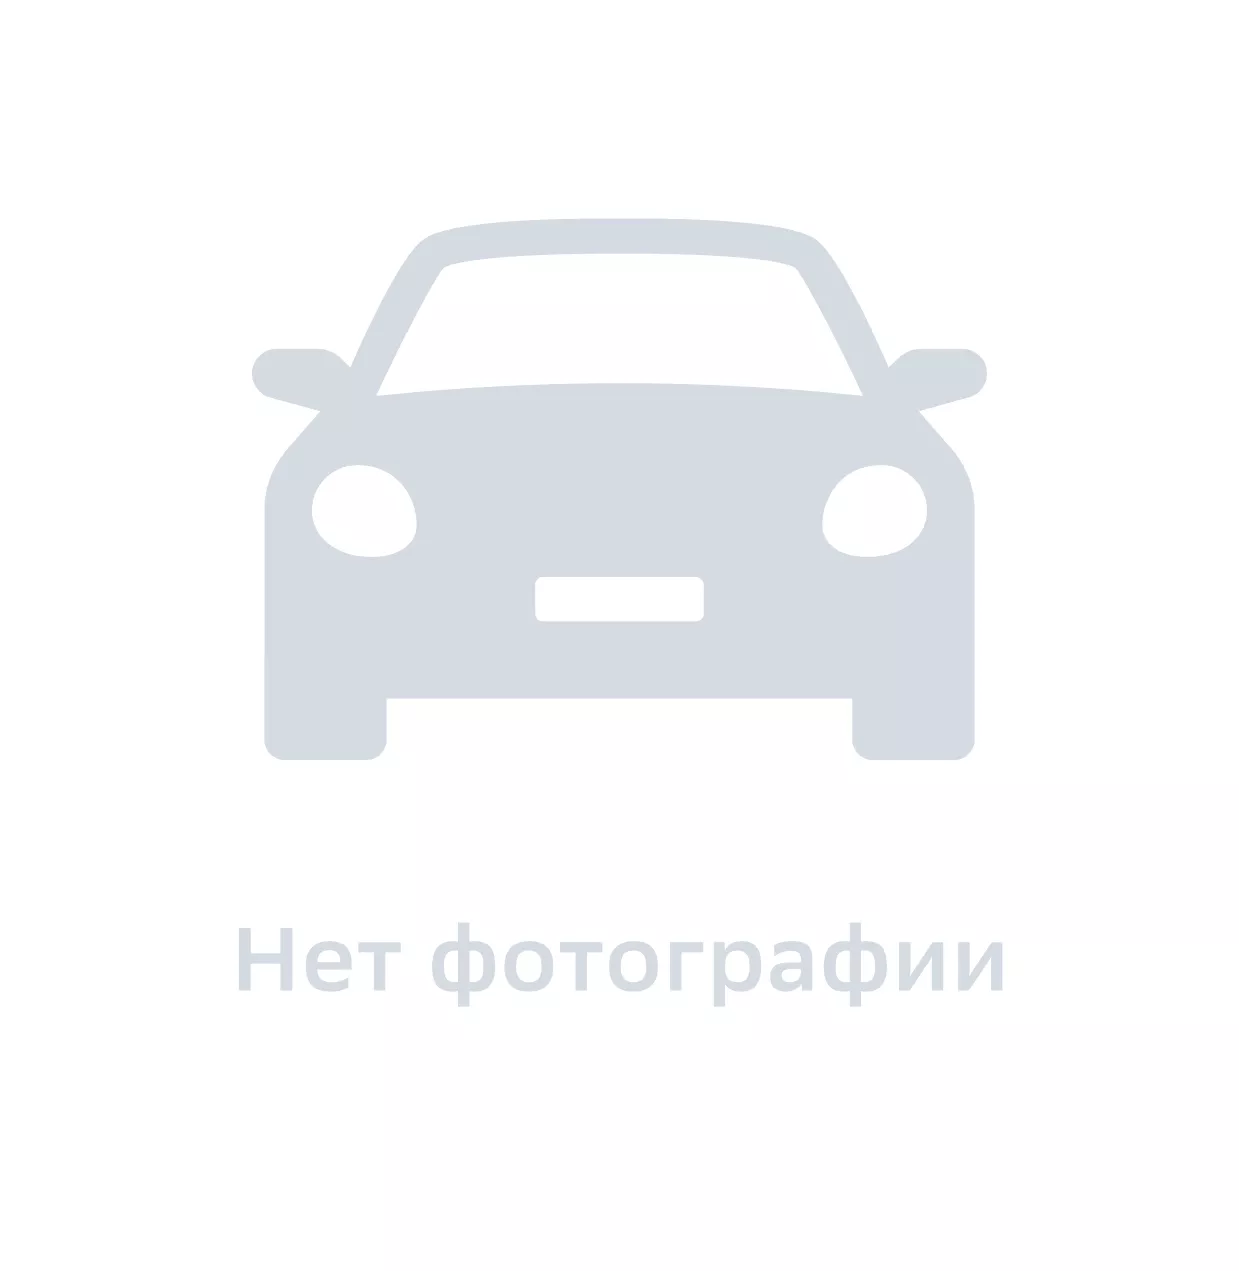 Втулка педали, Hyundai-KIA, арт. 0K20146085, цена за 1 шт.